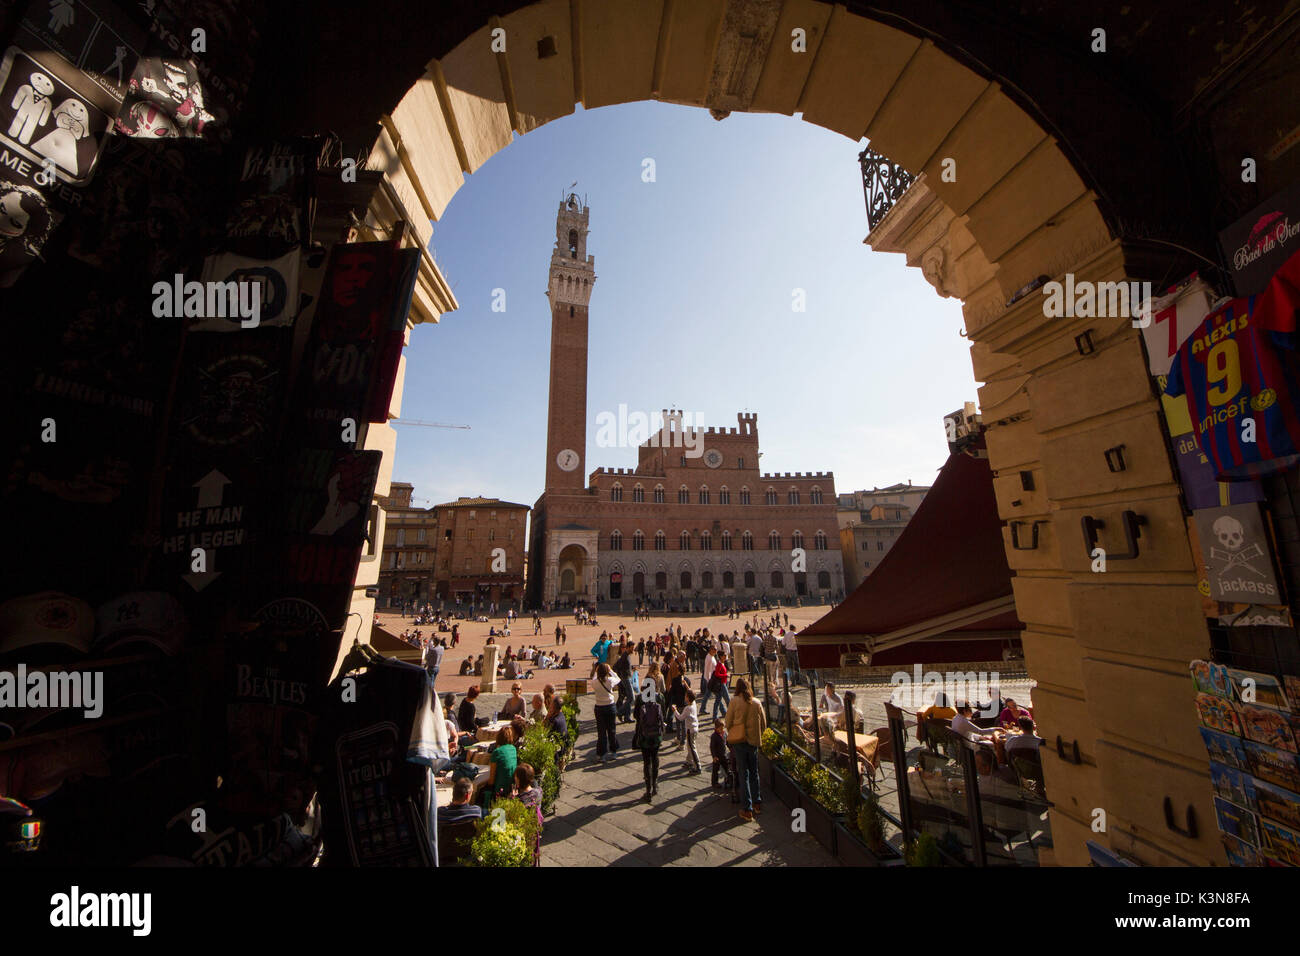 Le Palais Public et la Torre del Mangia vue depuis l'une des entrées de la Piazza del Campo, Sienne, Toscane, Italie Banque D'Images